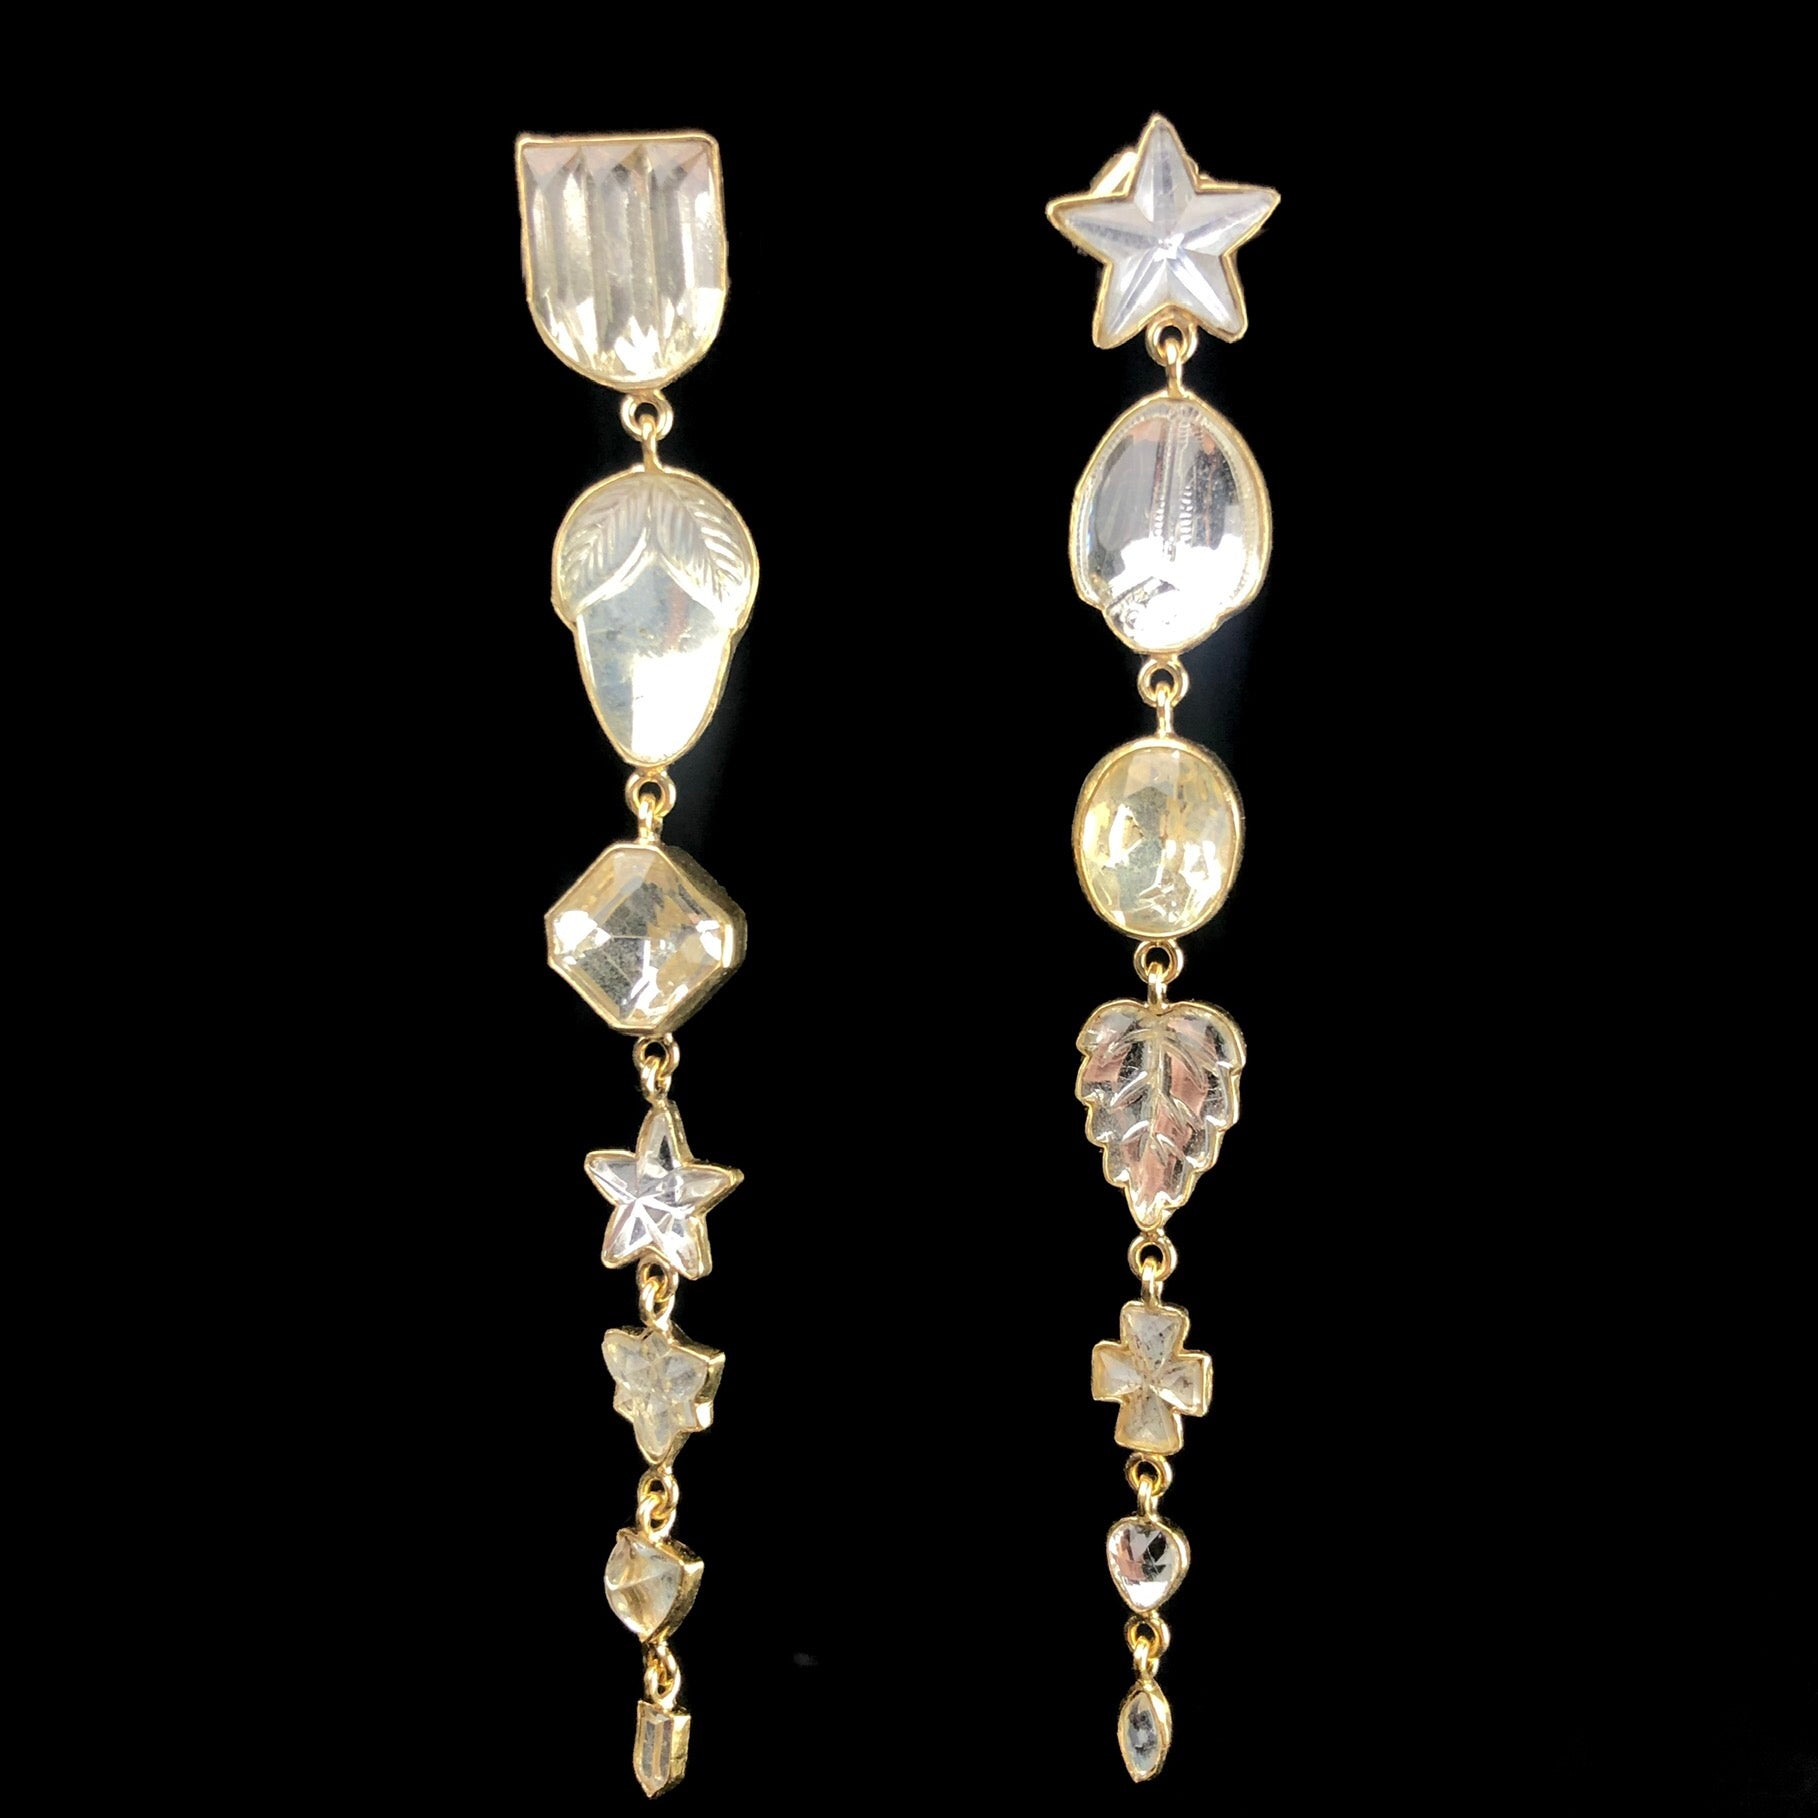 Seven Charm Star Drop Stud Earrings shown side by side